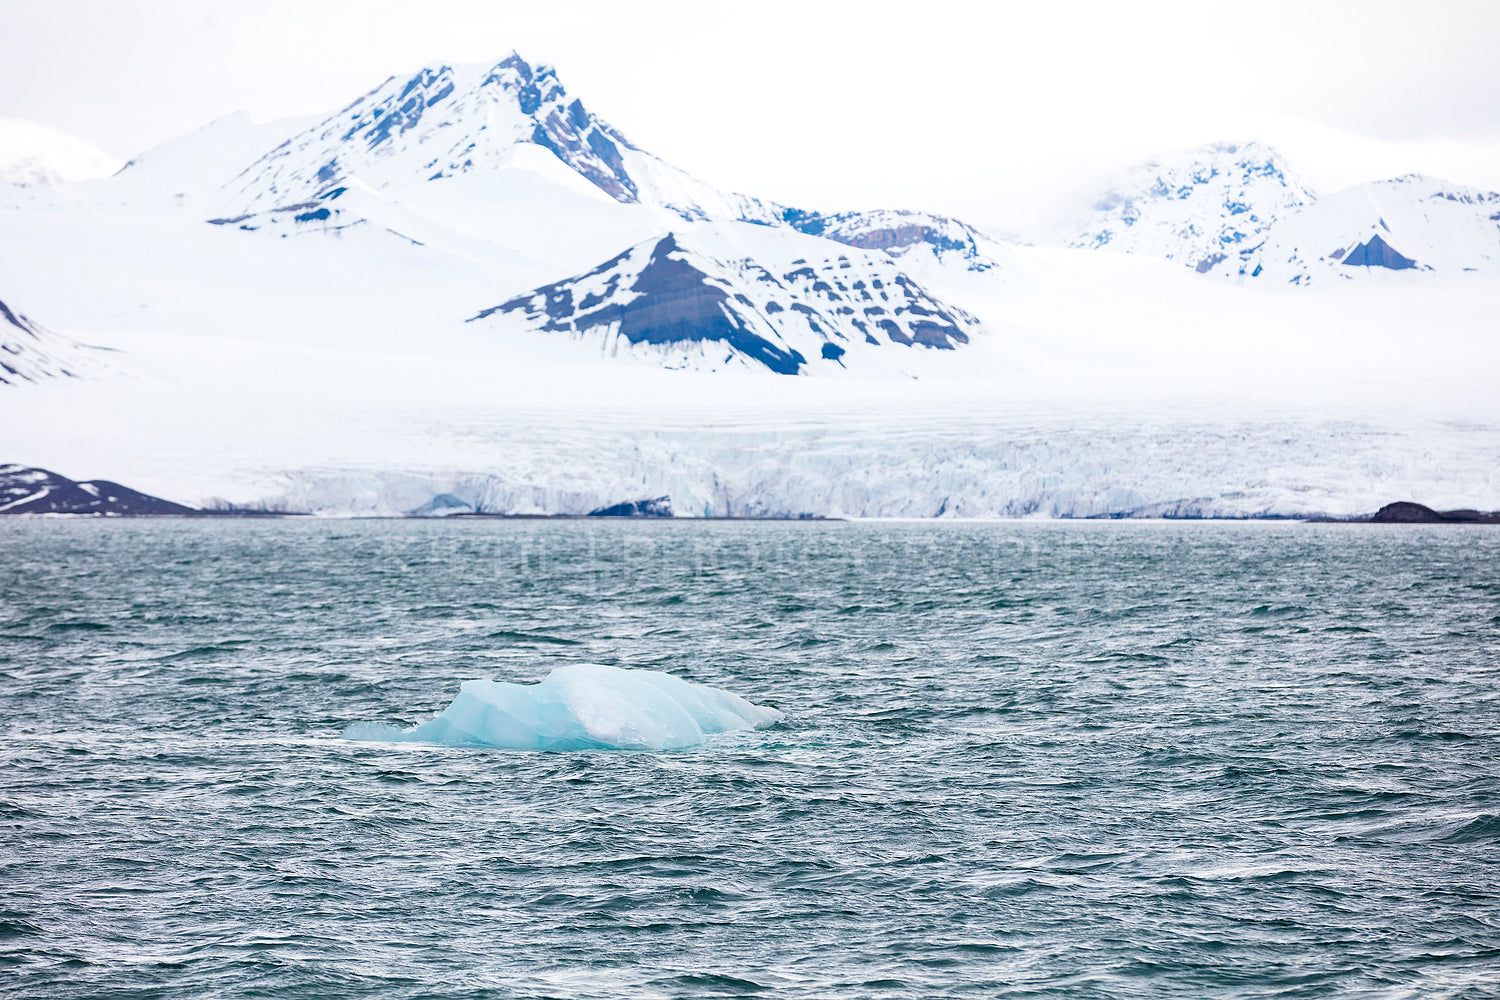 Floating sea ice near a massive glacier in the arctic